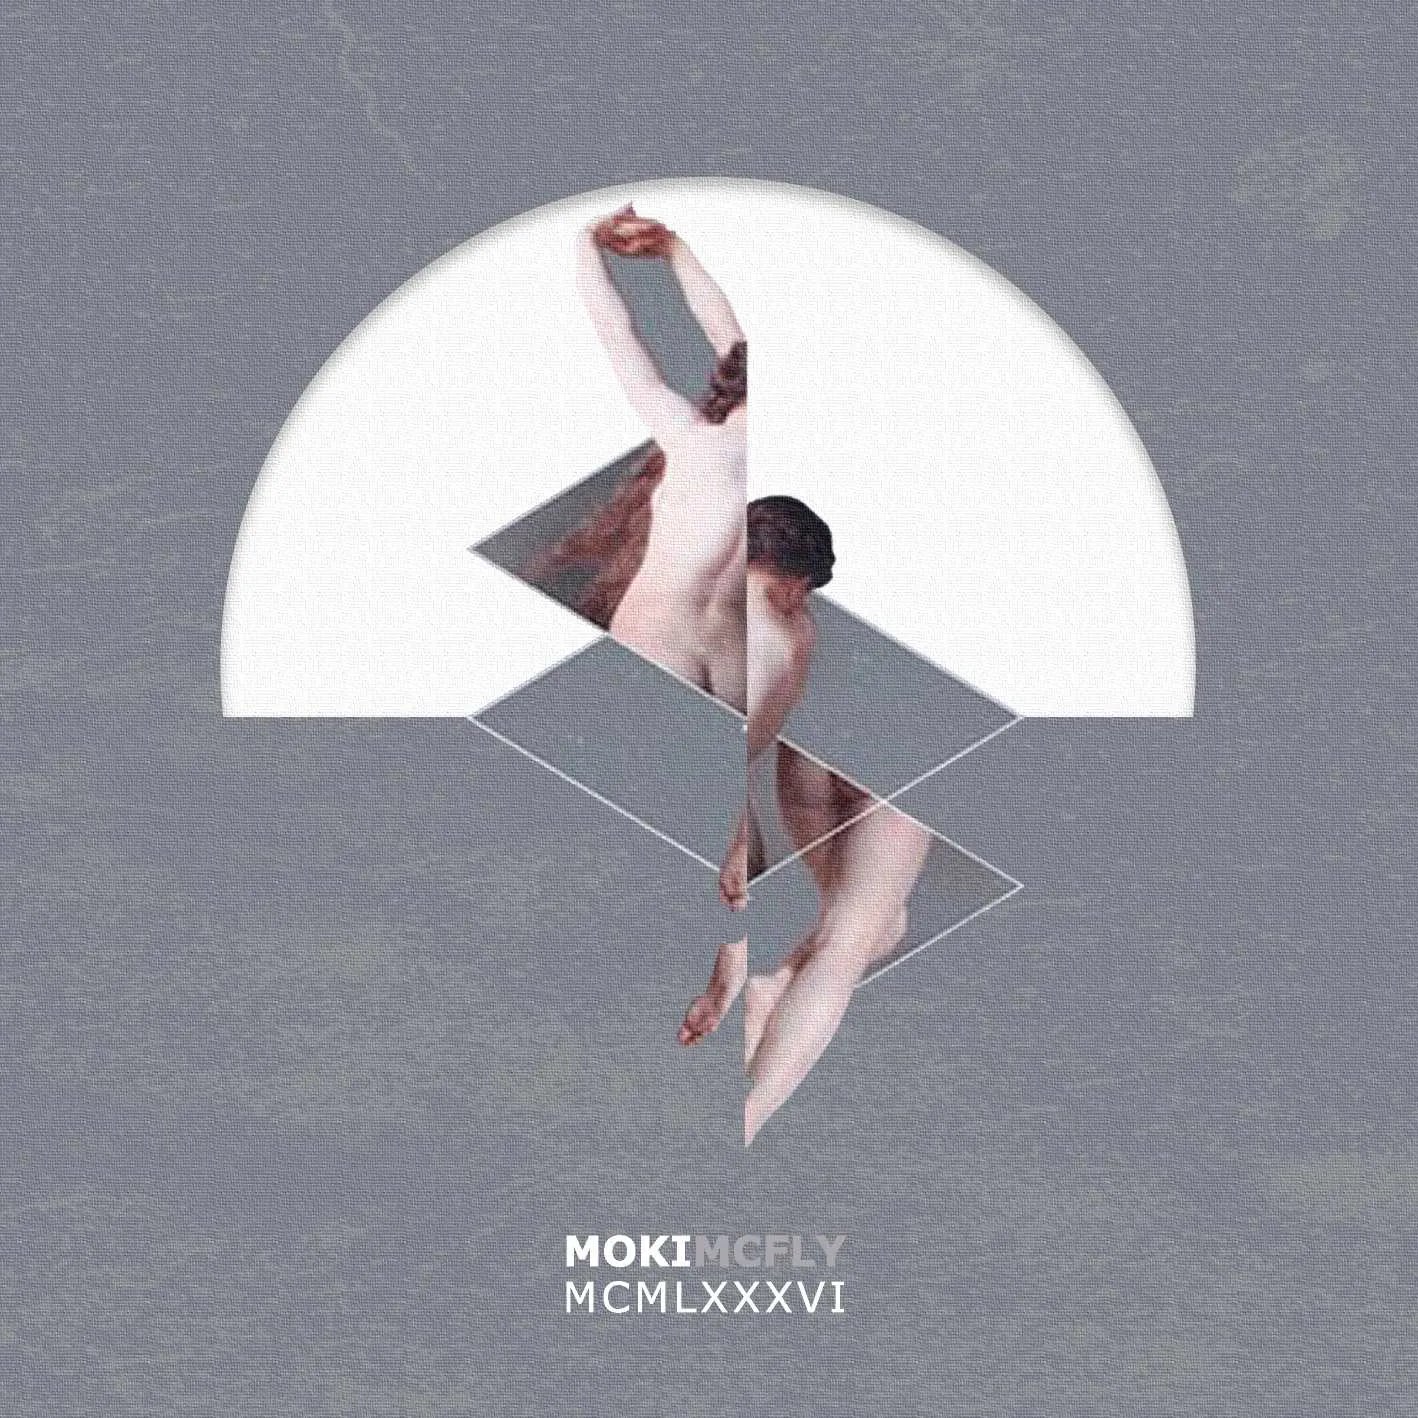 Album cover for “MCMLXXXVI” by Moki Mcfly